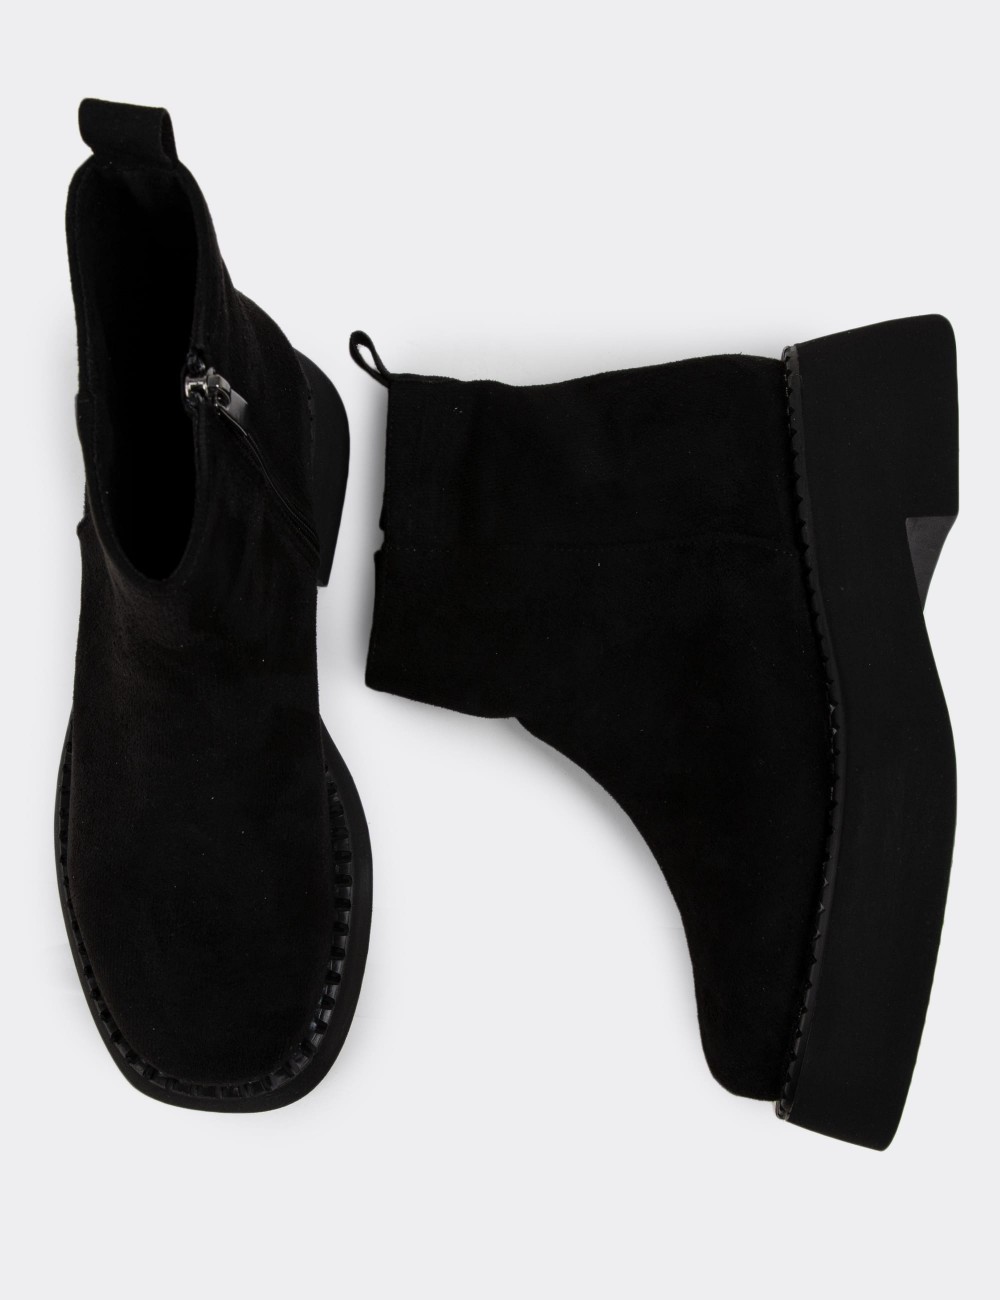 Black Boots - K1902ZSYHE01